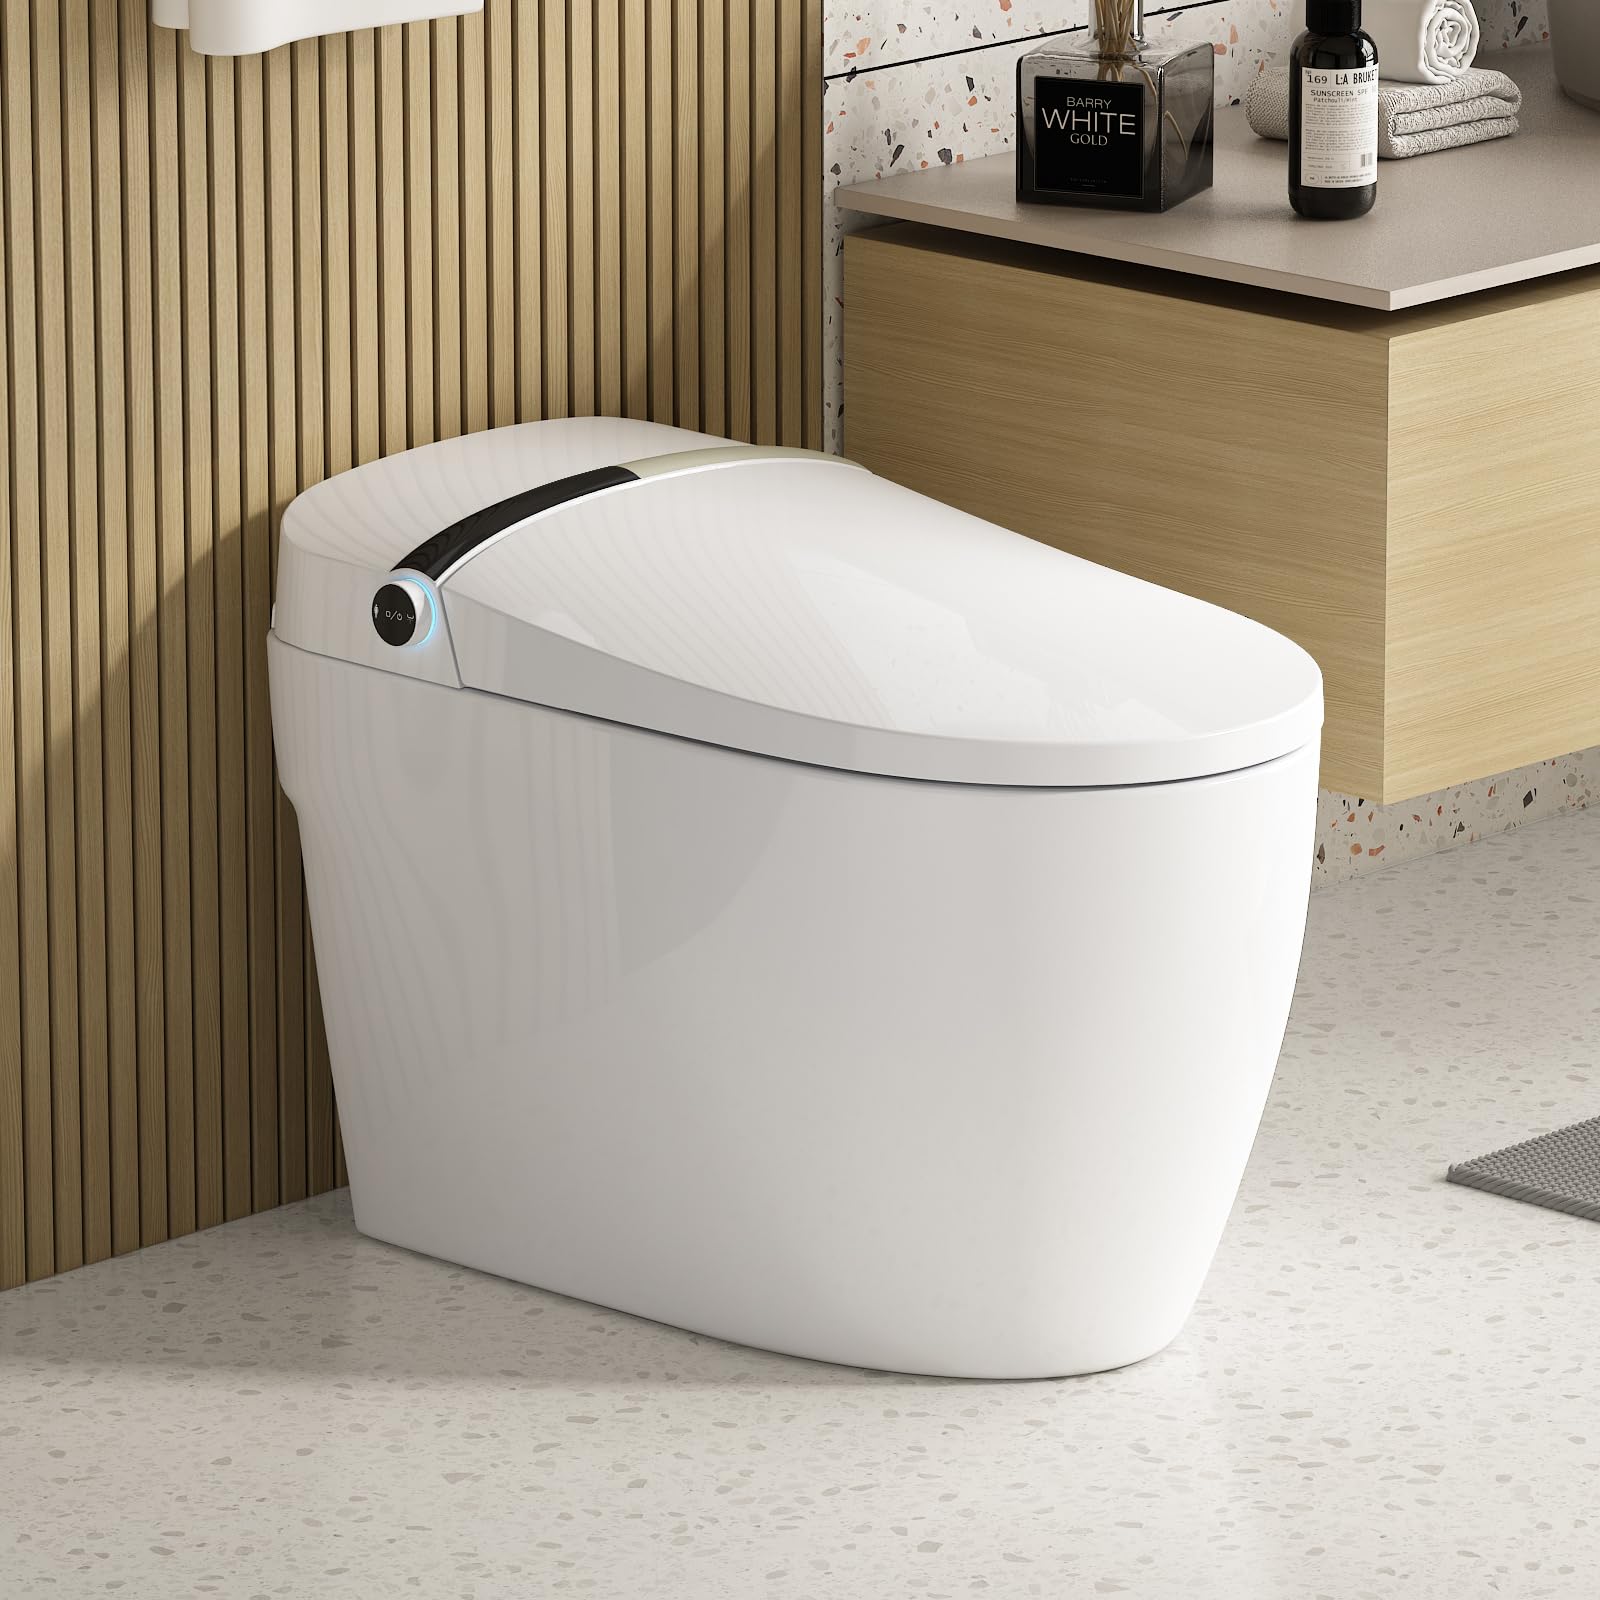 Flodream Modern Smart Toilet